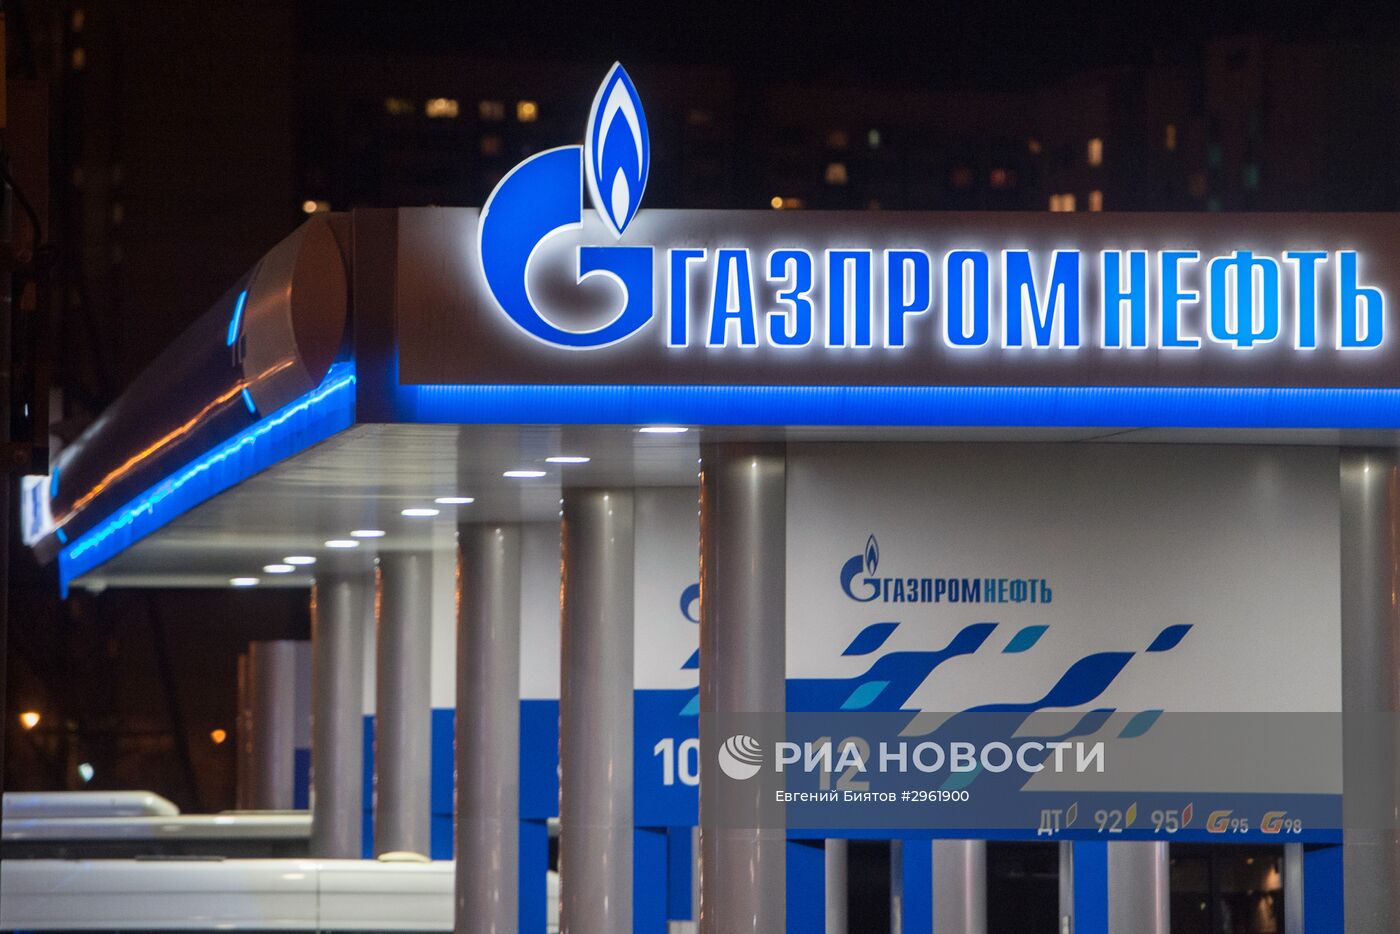 Автозаправочная станция "Газпром нефть" в Москве